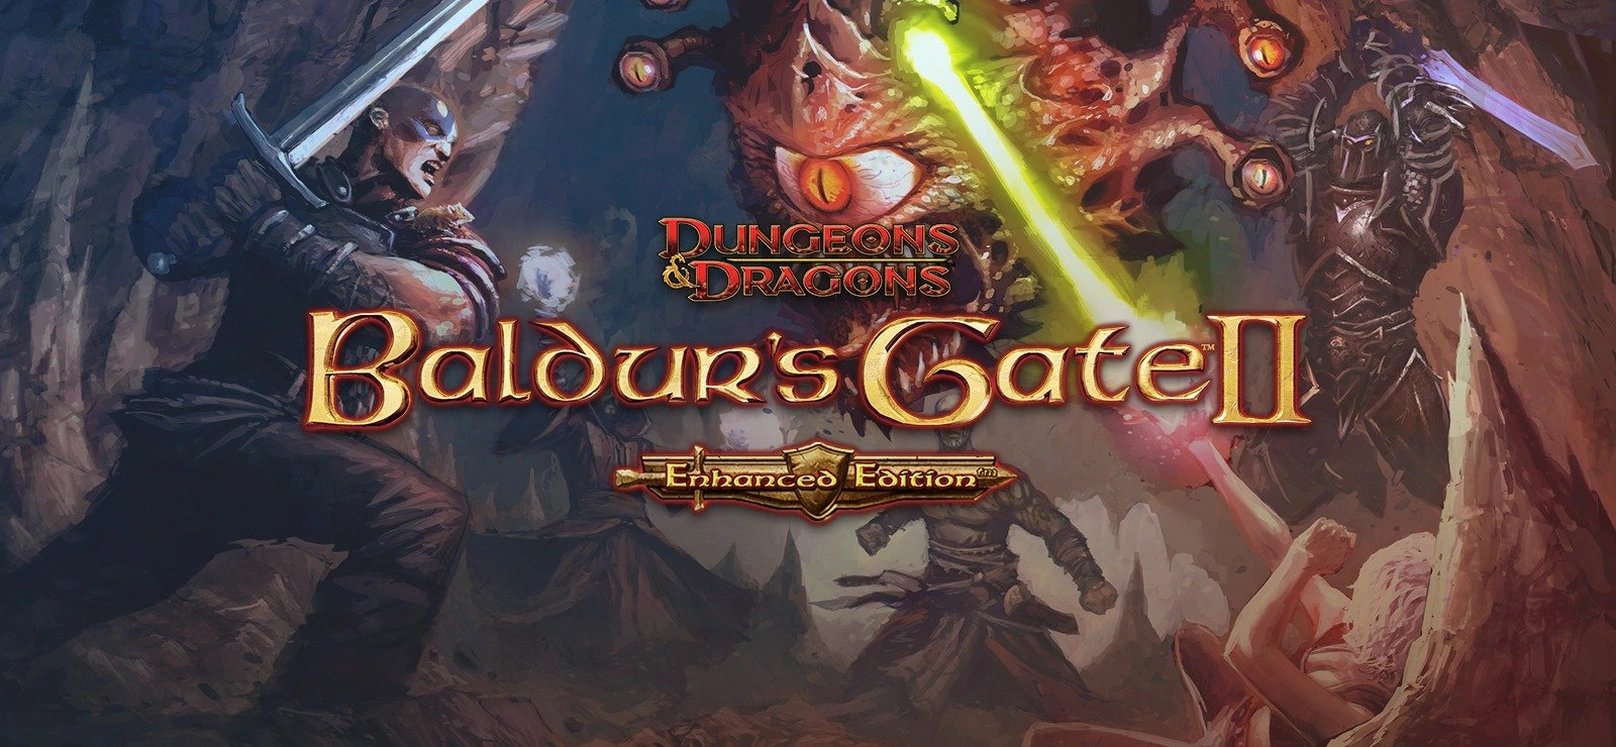 [Baldur’s Gate 2] Официальные обои улучшенного издания.